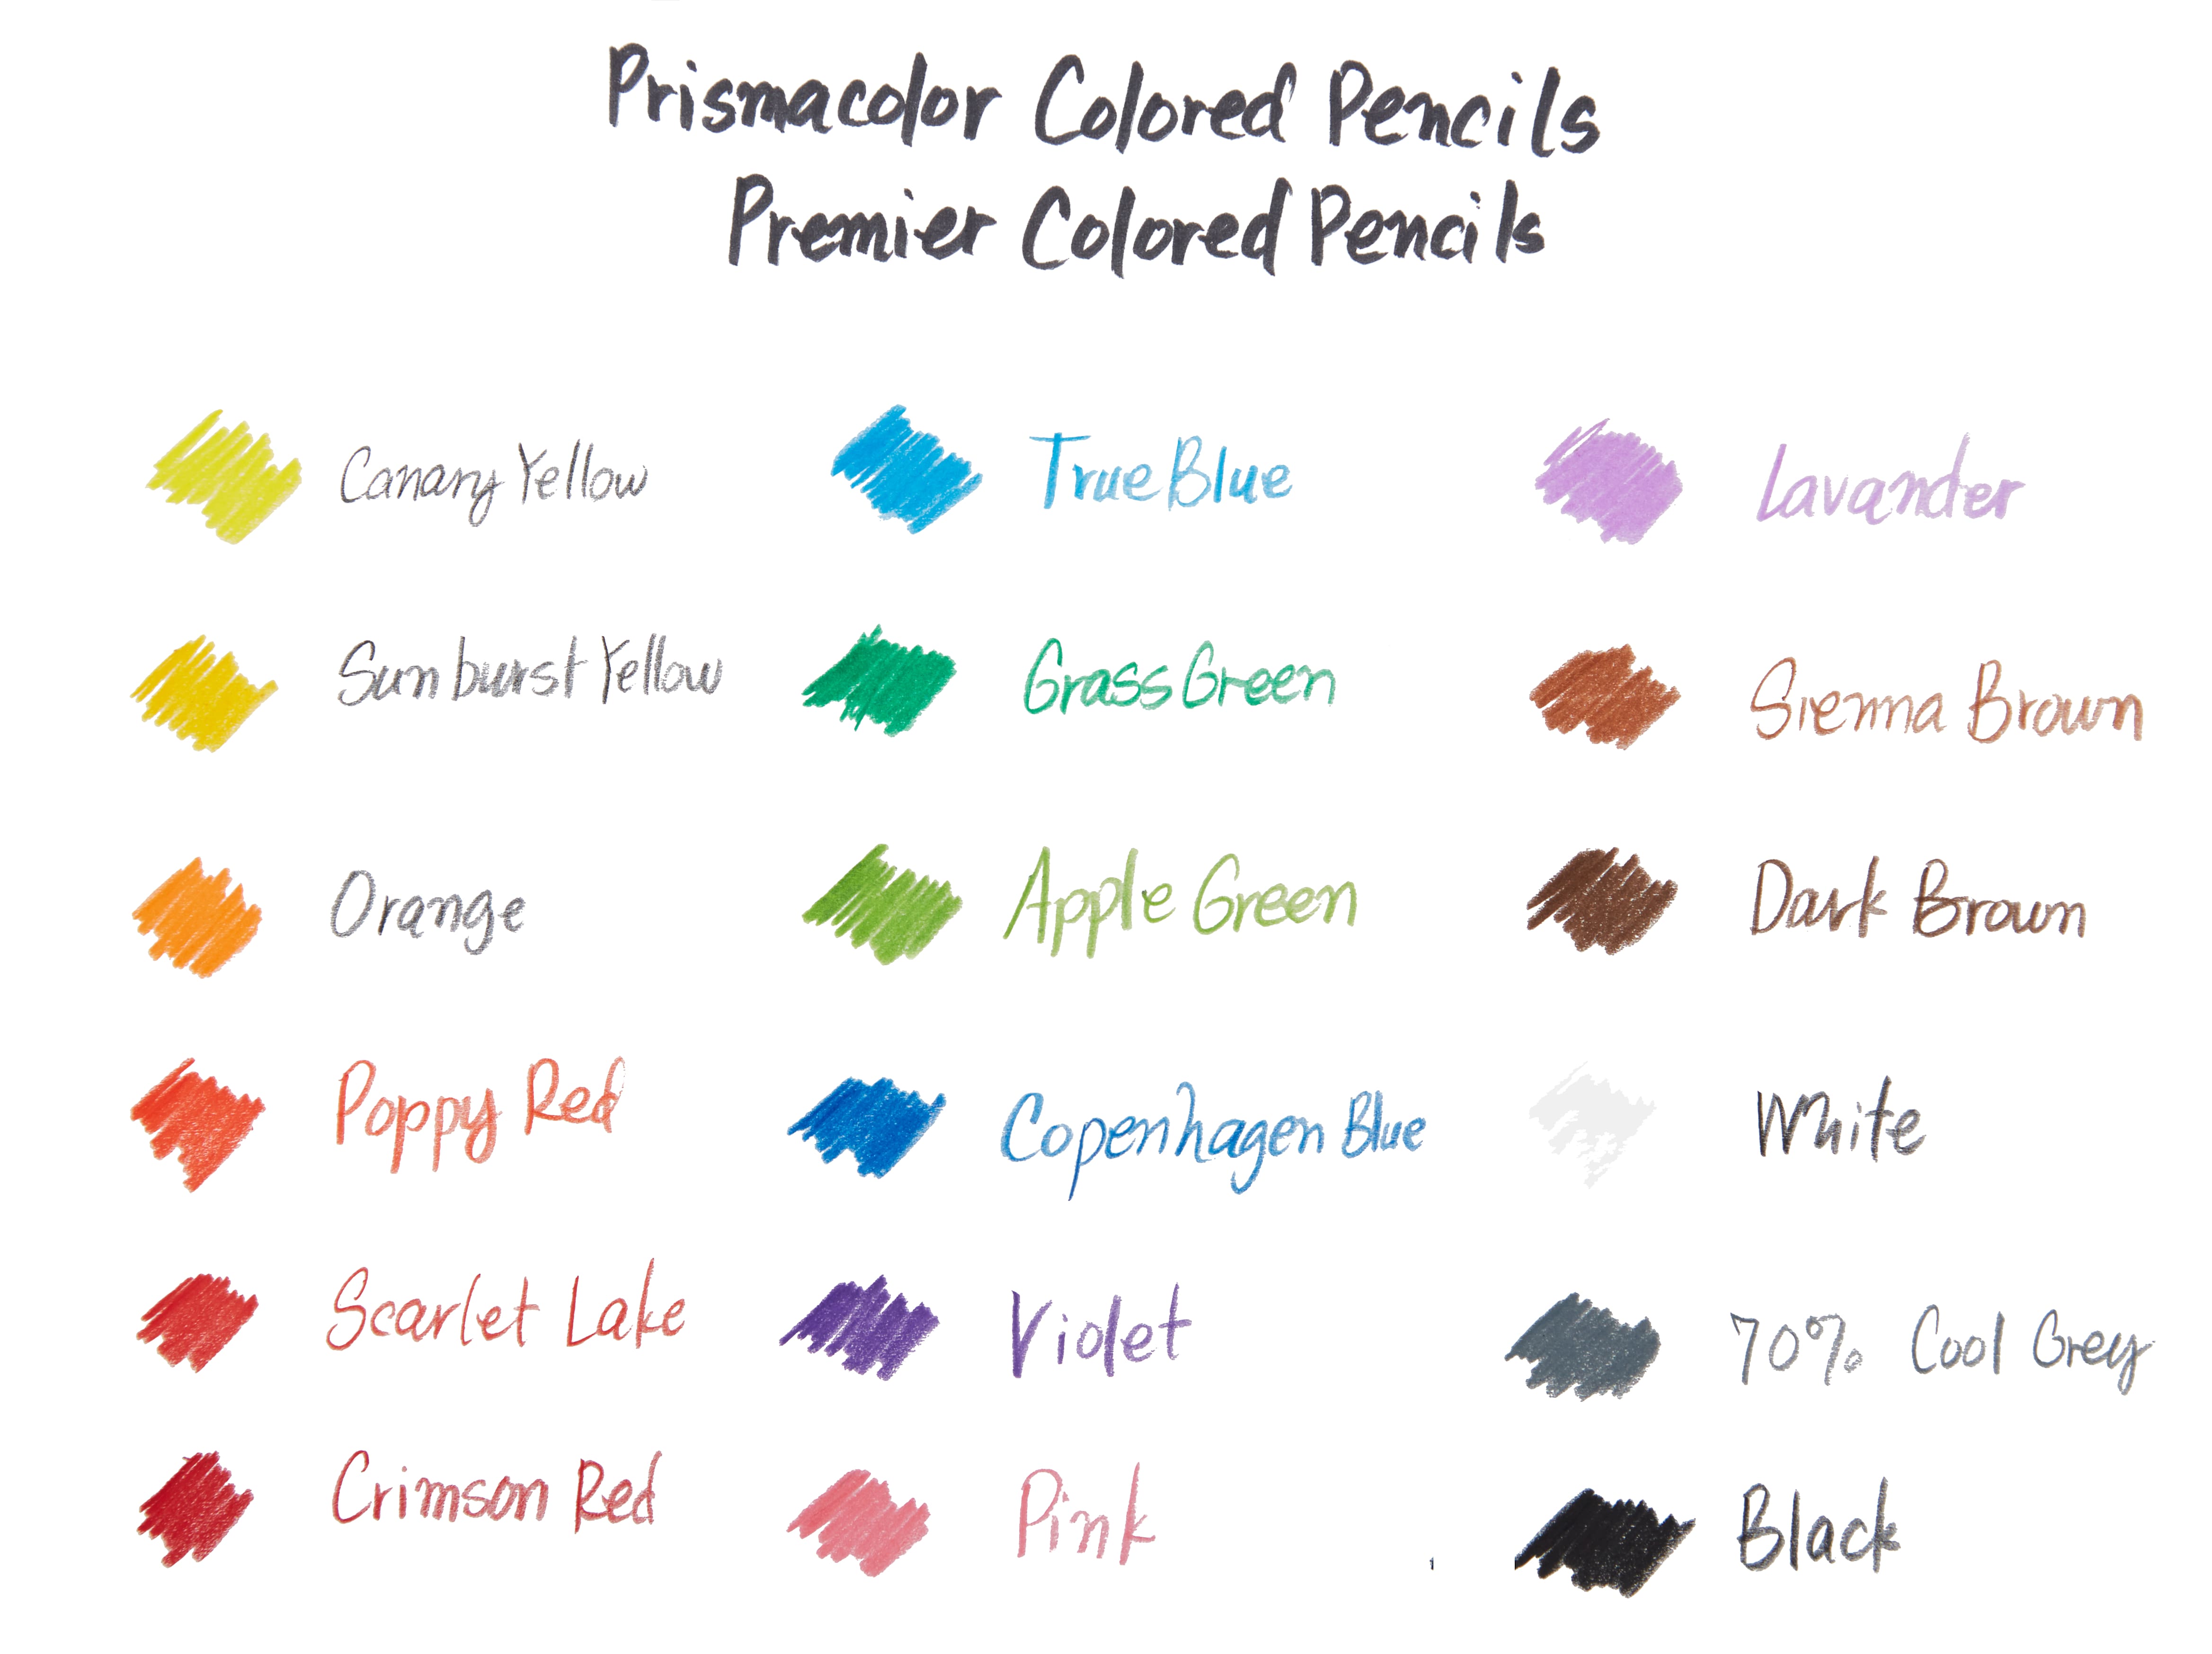 Shop the Prismacolor® Premier® Soft Core Colored Pencil at Michaels